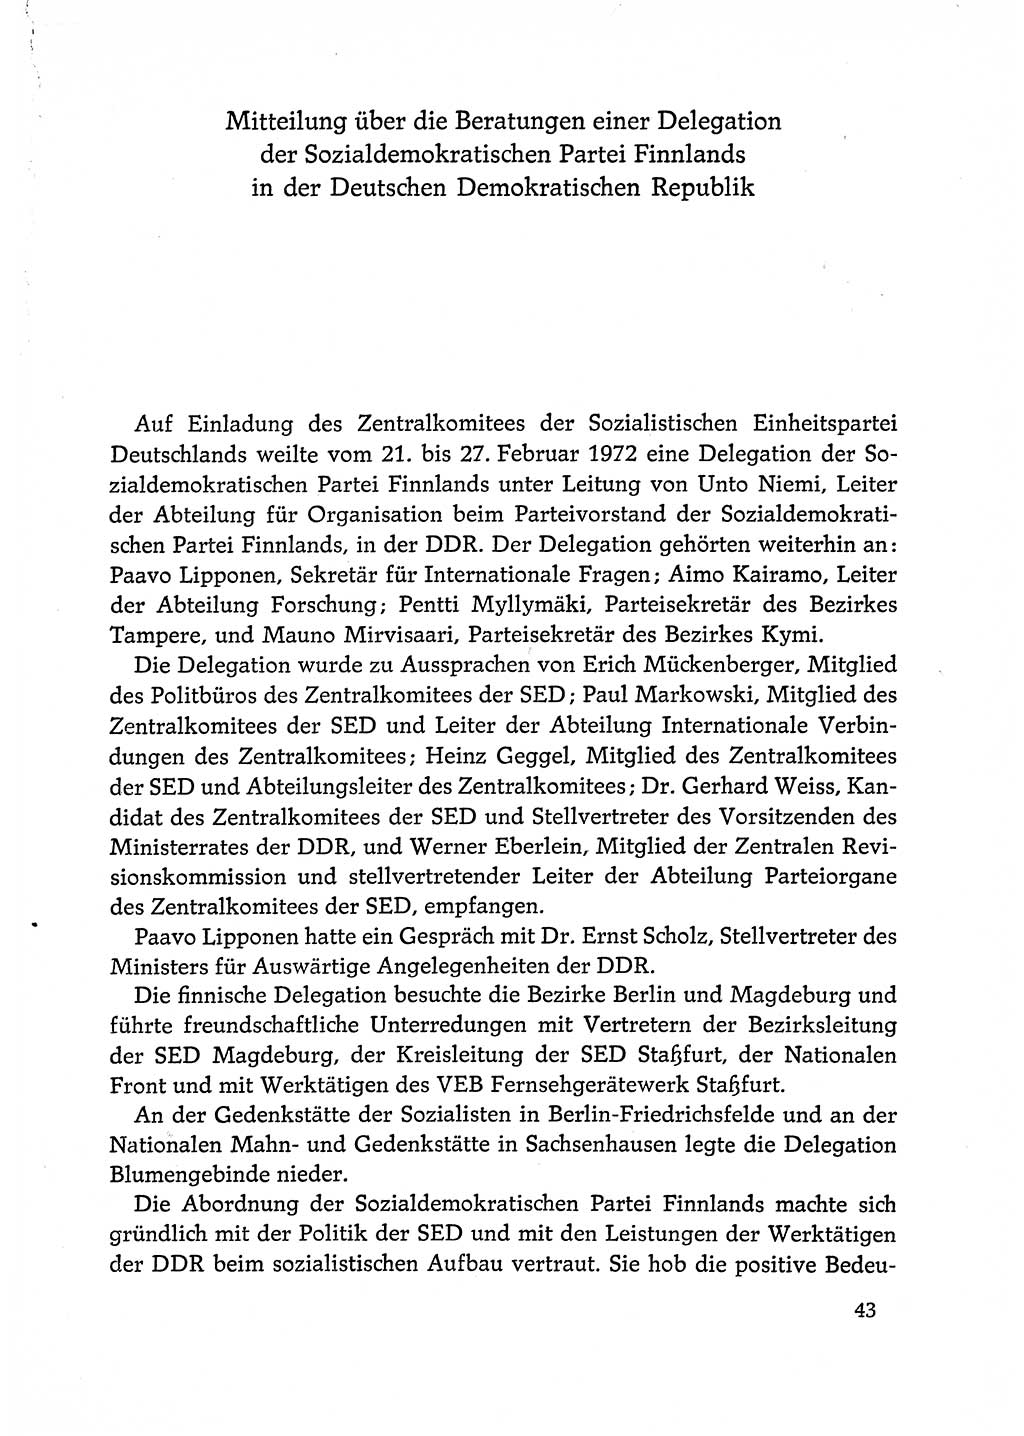 Dokumente der Sozialistischen Einheitspartei Deutschlands (SED) [Deutsche Demokratische Republik (DDR)] 1972-1973, Seite 43 (Dok. SED DDR 1972-1973, S. 43)